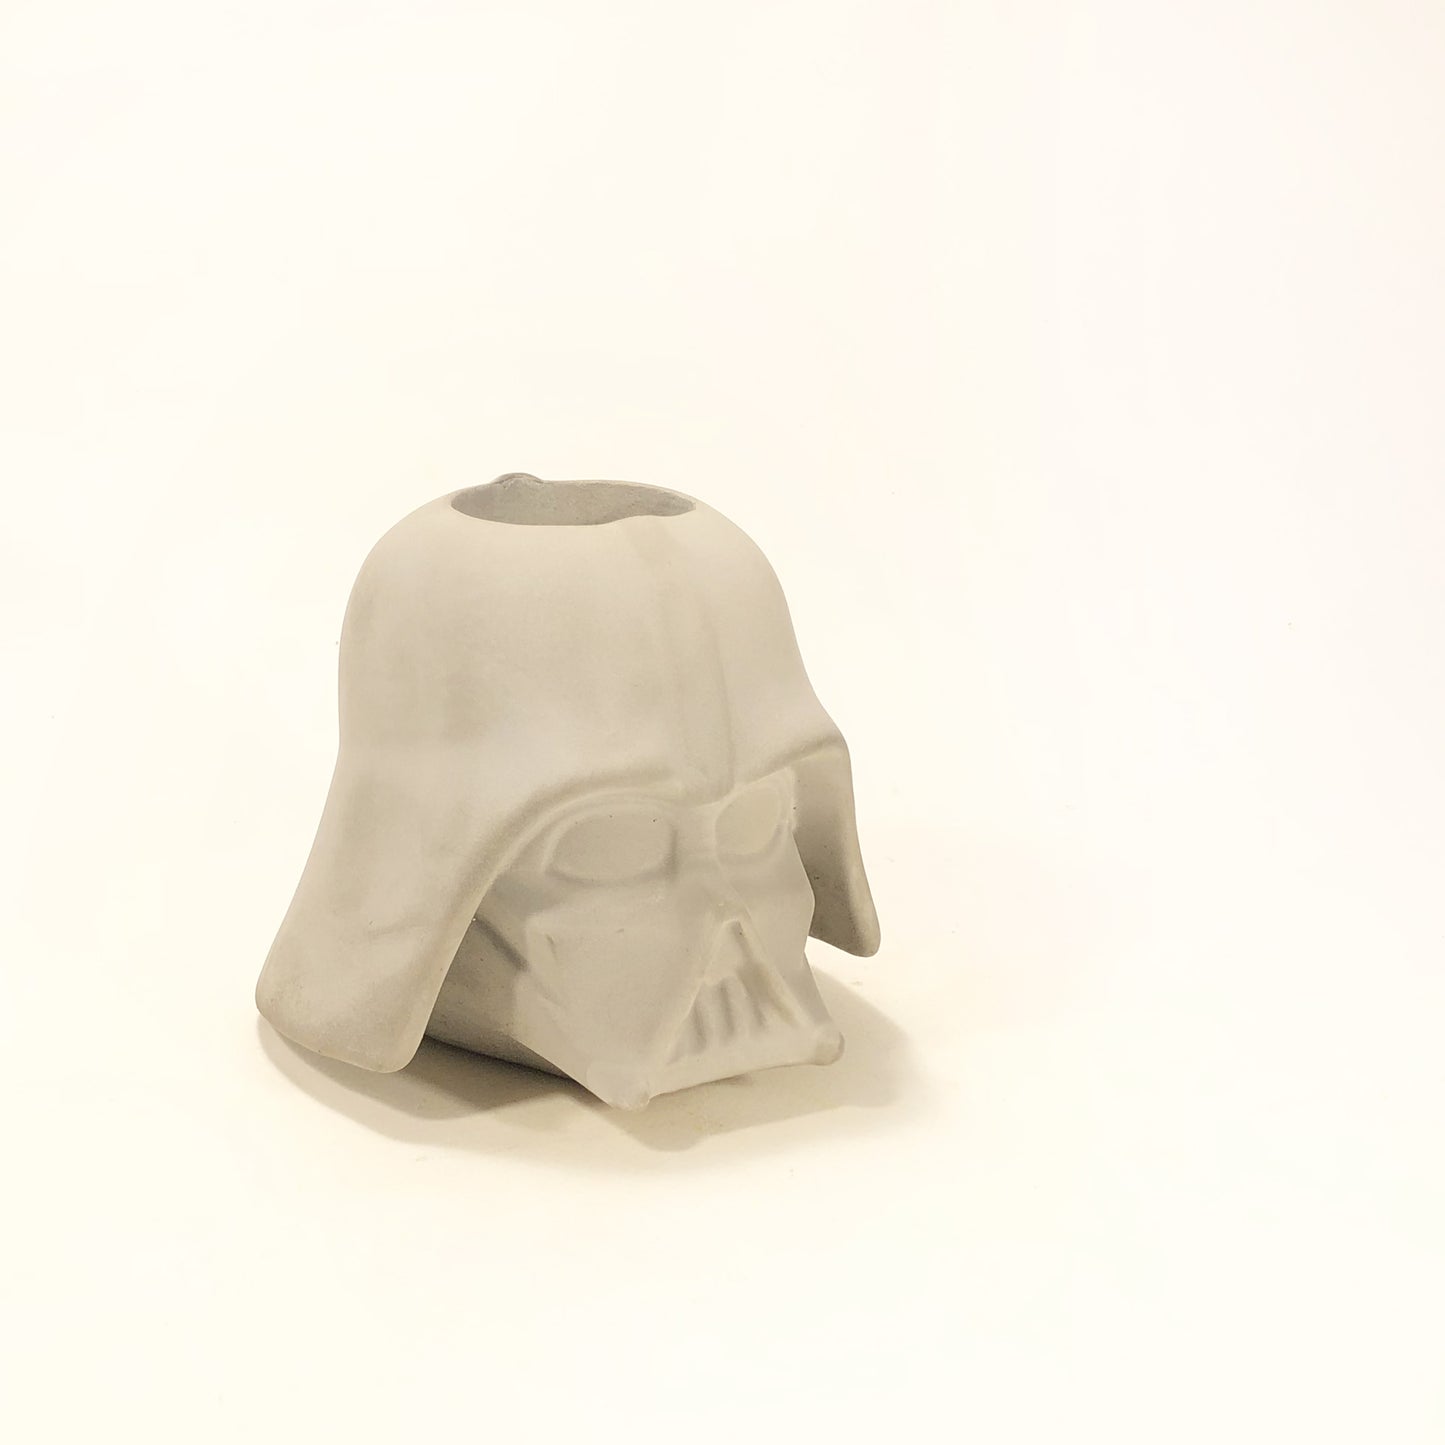 Lord Vader Star Wars vase/pen holder 